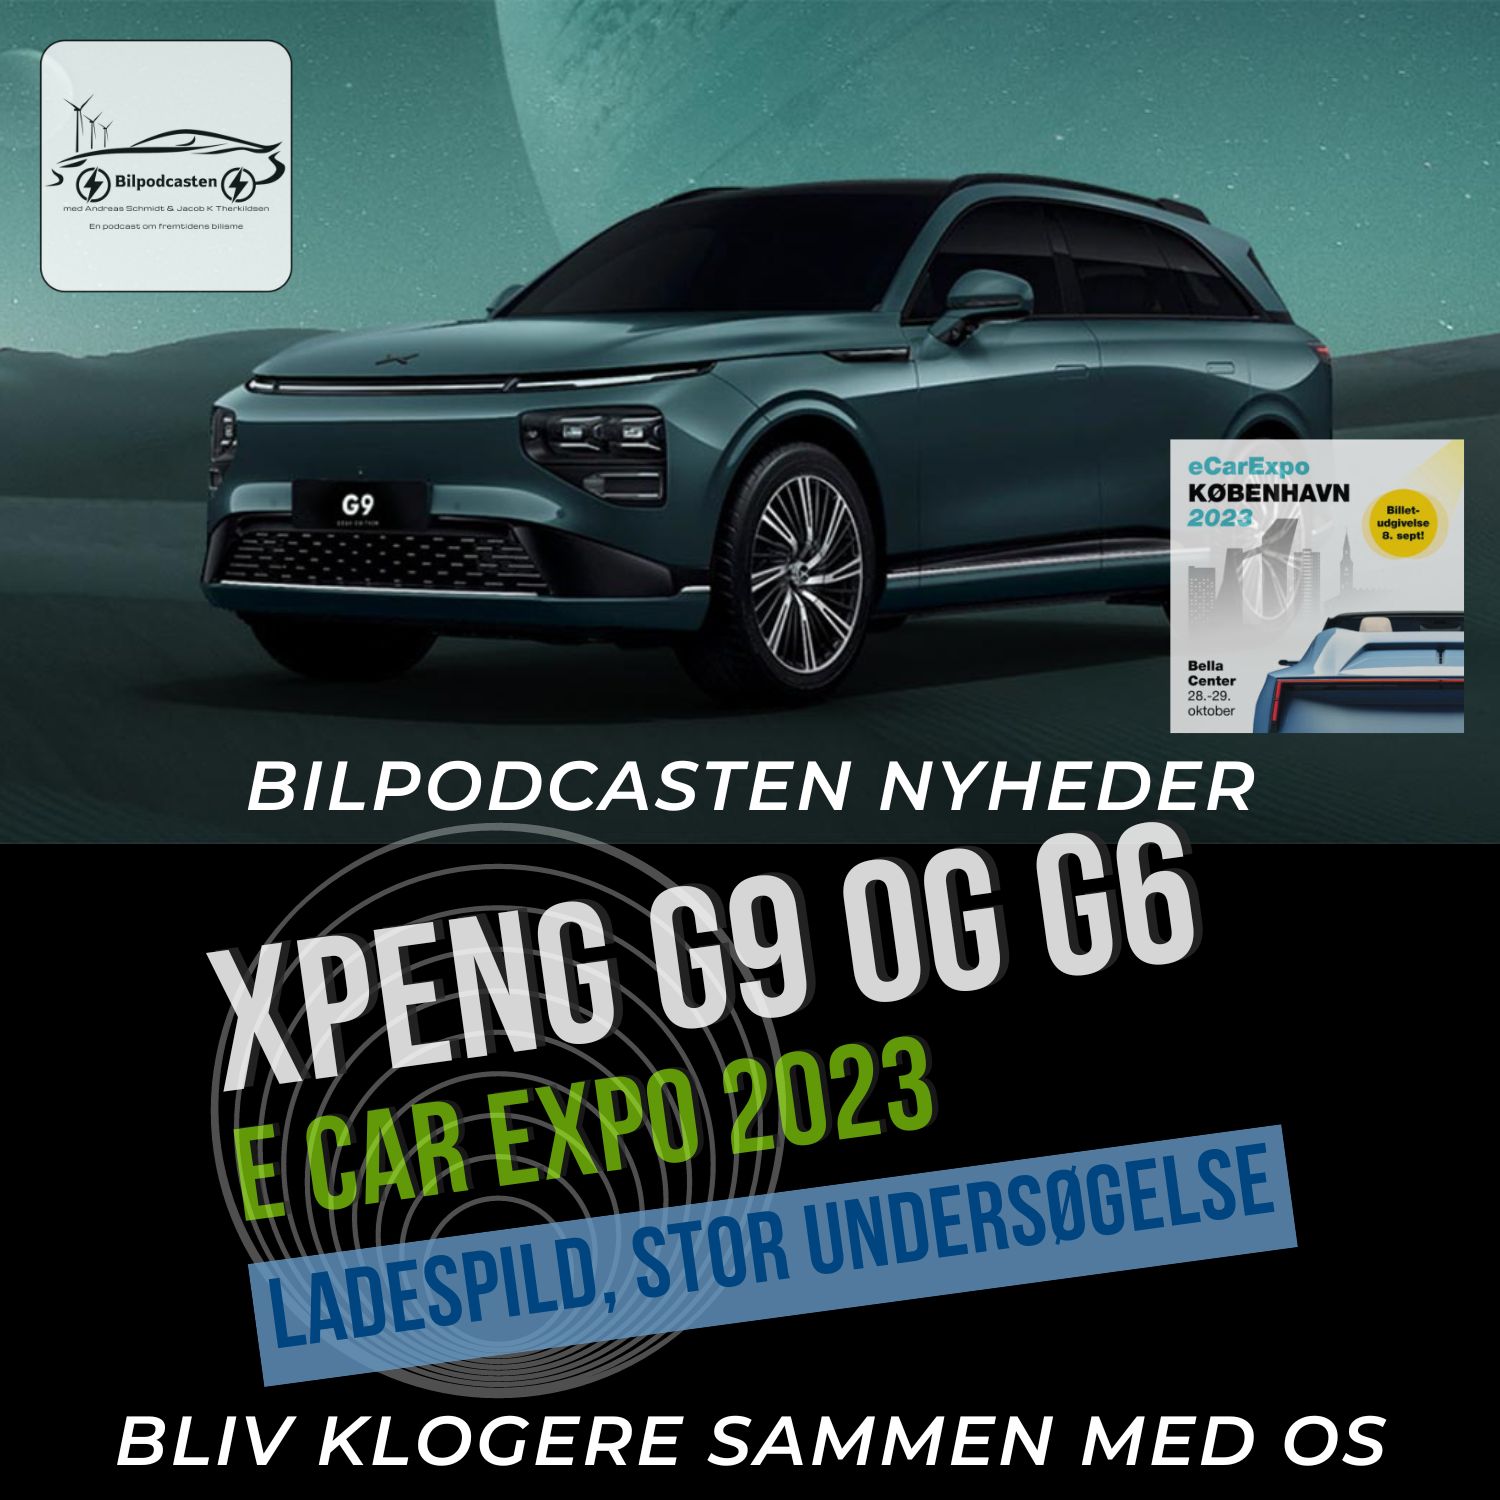 Stor undersøgelse om ladespild, Allerede facelift på Xpeng G9, samt E Car Expo 2023 i Bella Centret København.